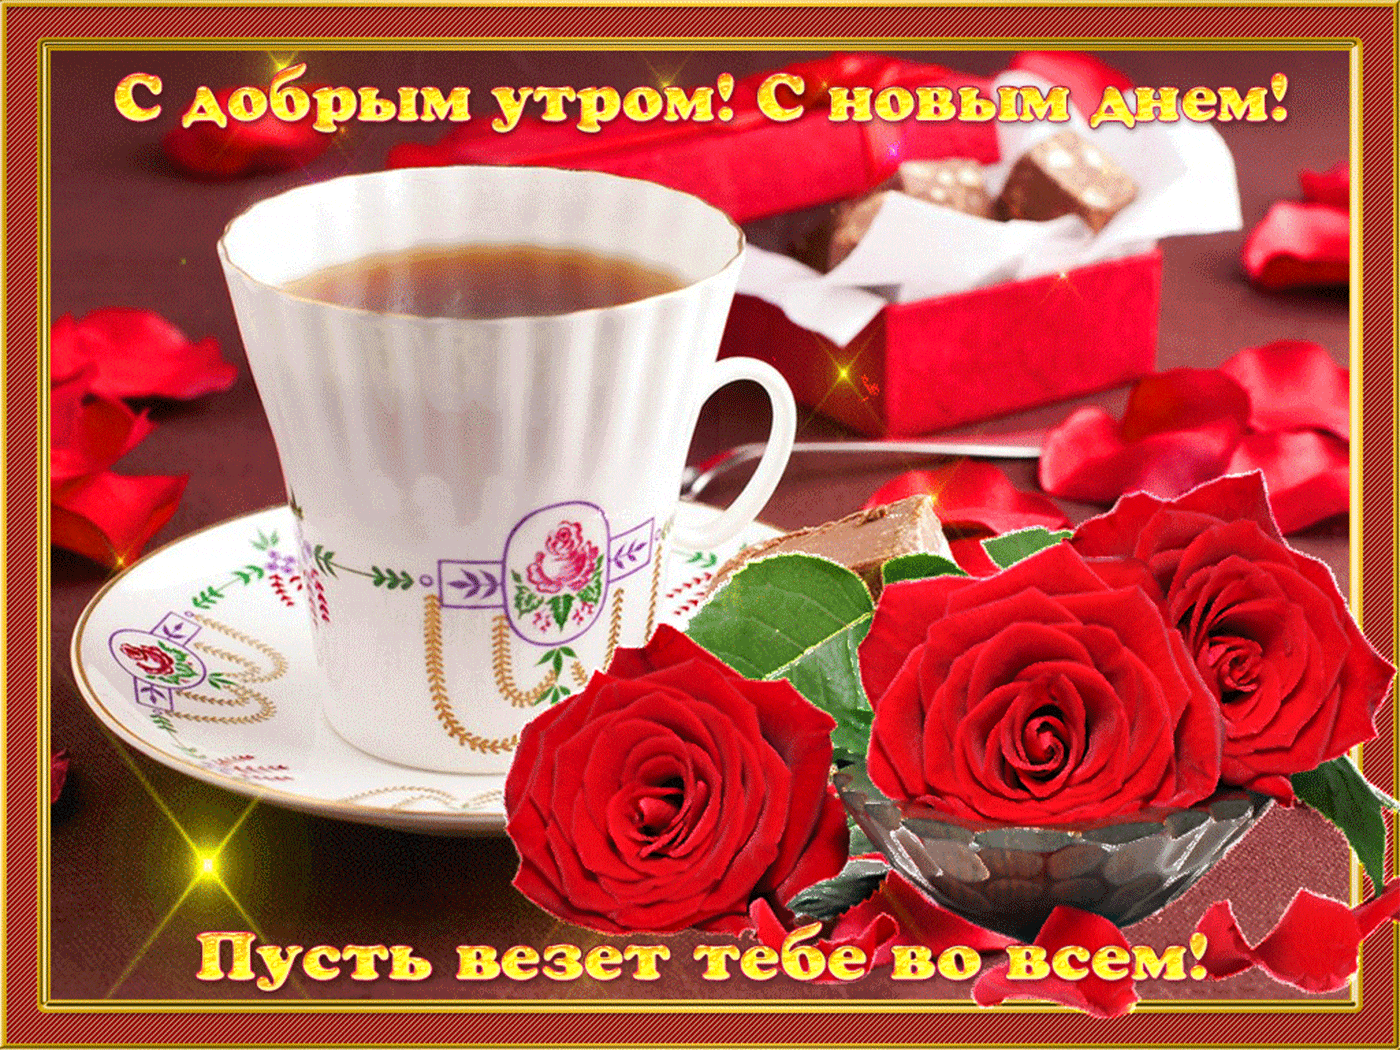 Отличные поздравления с добрым утром. Пожелания доброго утра. Открытки с добрым утром. Доброе утро прекрасного дня. Красивые поздравления с добрым утром.